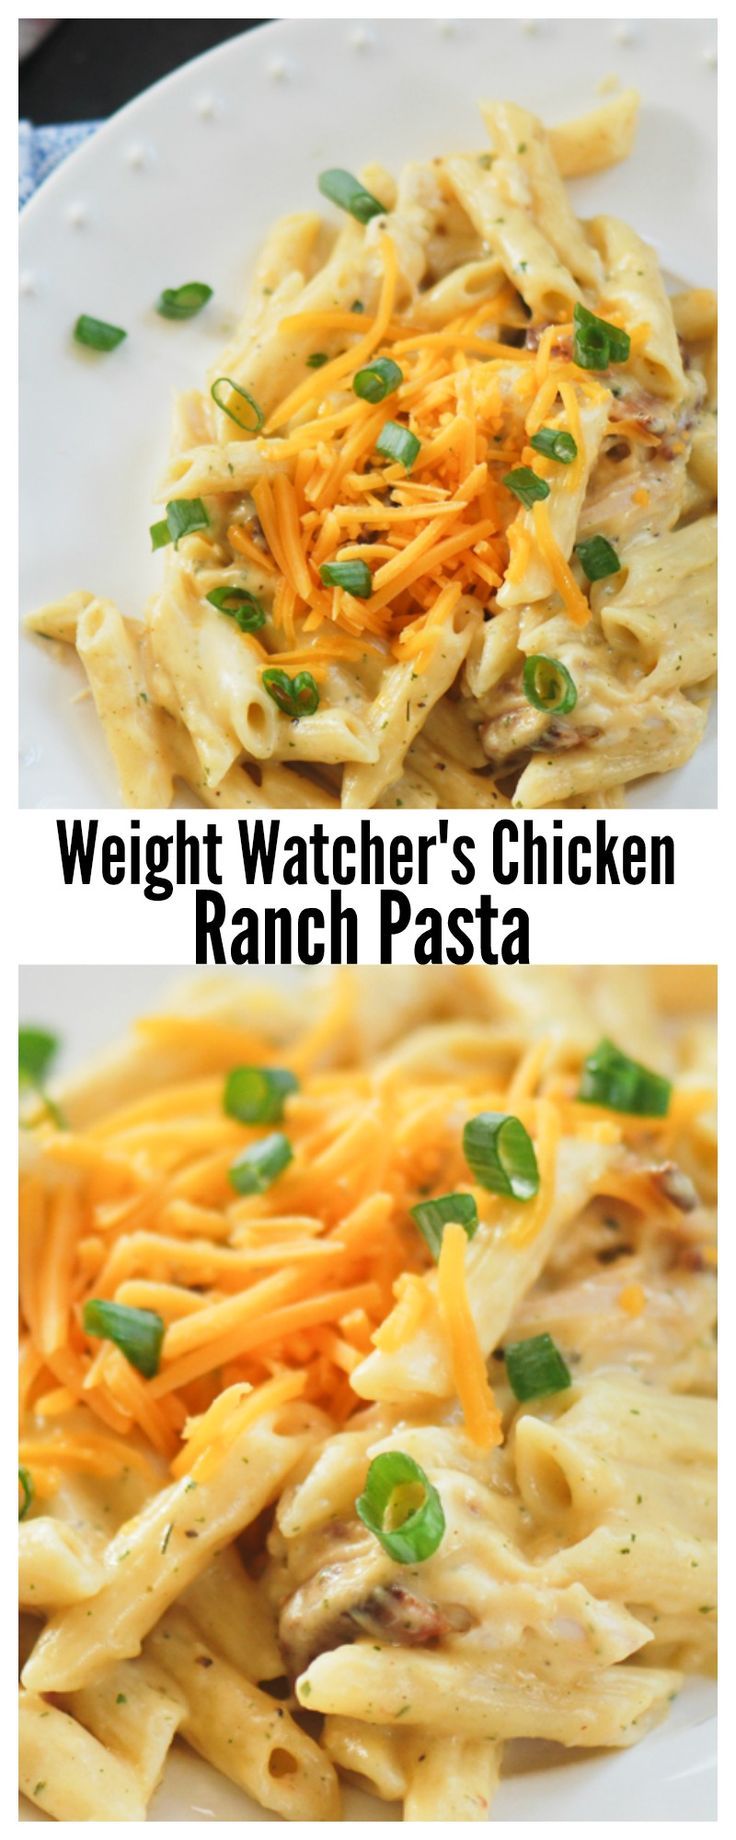 Weight Watchers Chicken Ranch Pasta